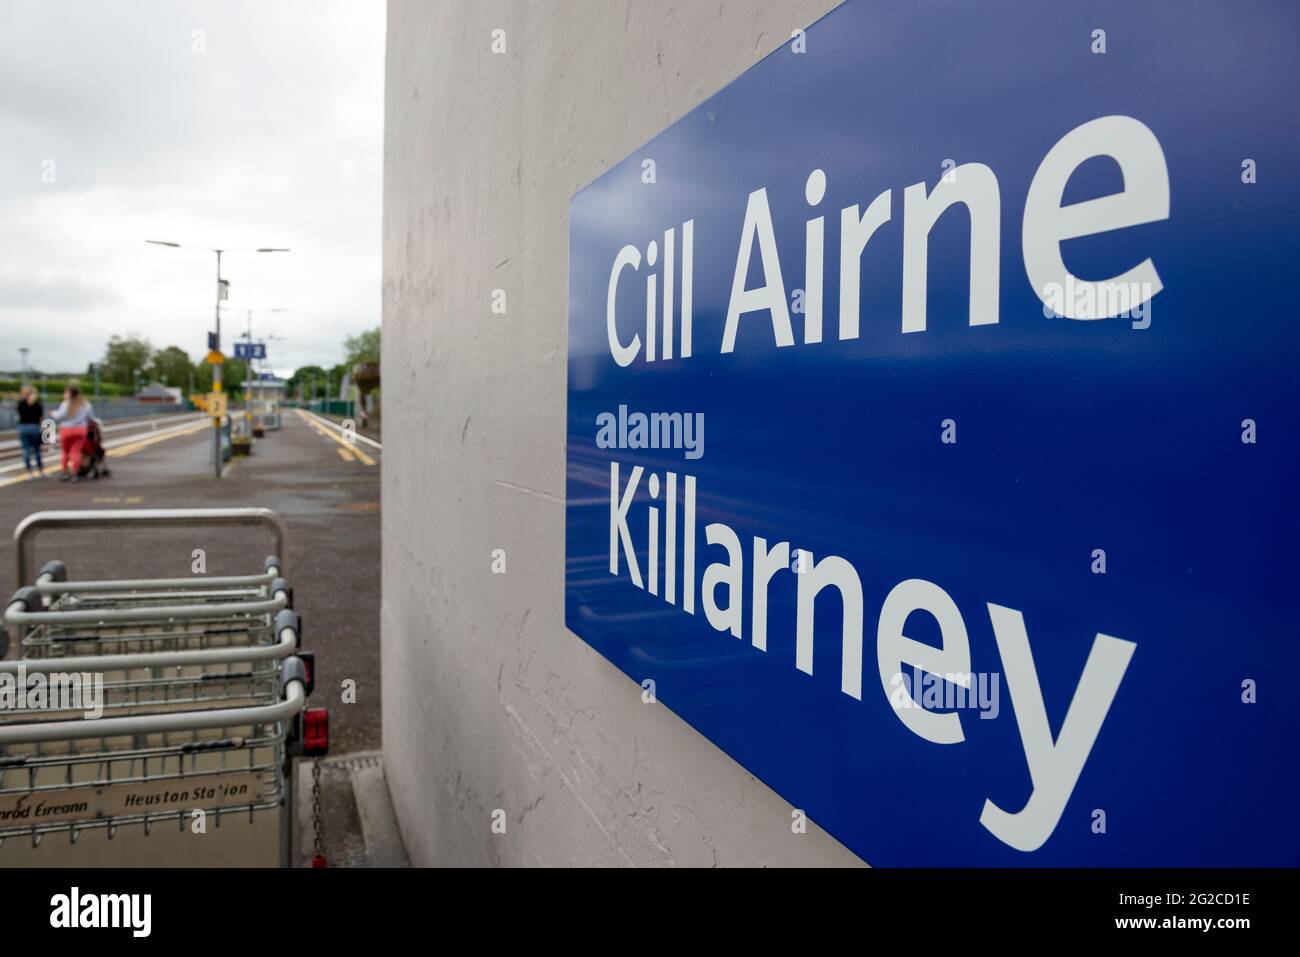 Bilingual sign for the Killarney train station in Killarney, County Kerry, Ireland Stock Photo